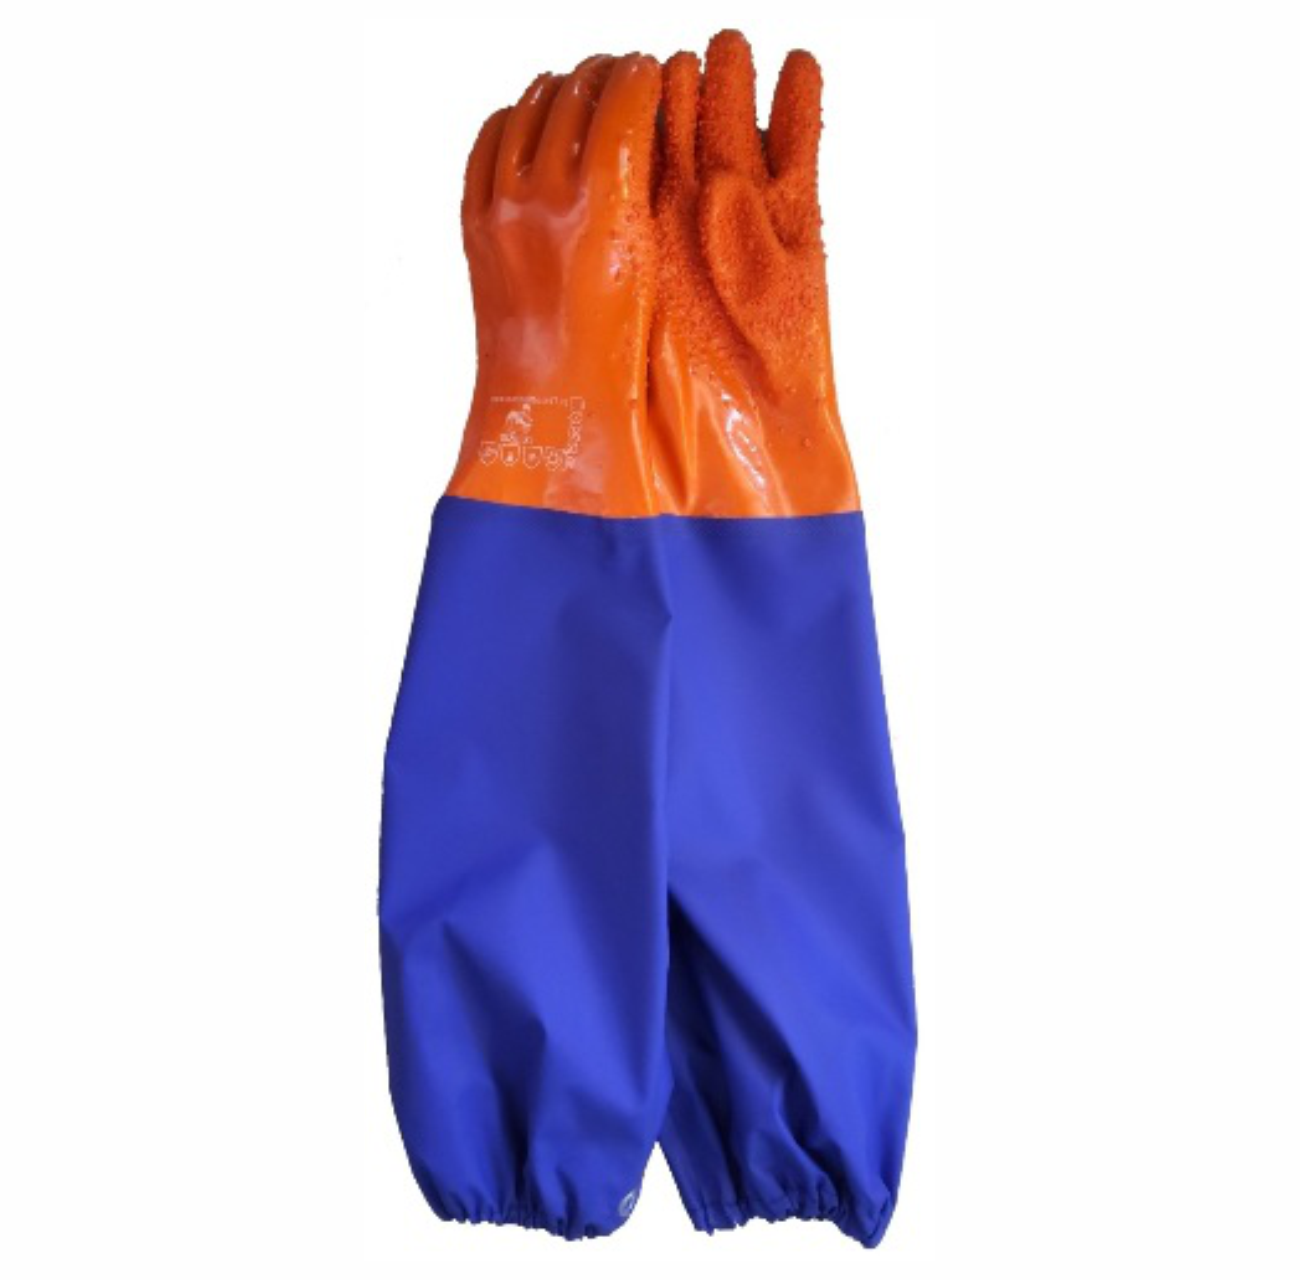 Перчатки ПВХ с нарукавниками на резинке с крошкой оранжево-синие MARINE HOUSE